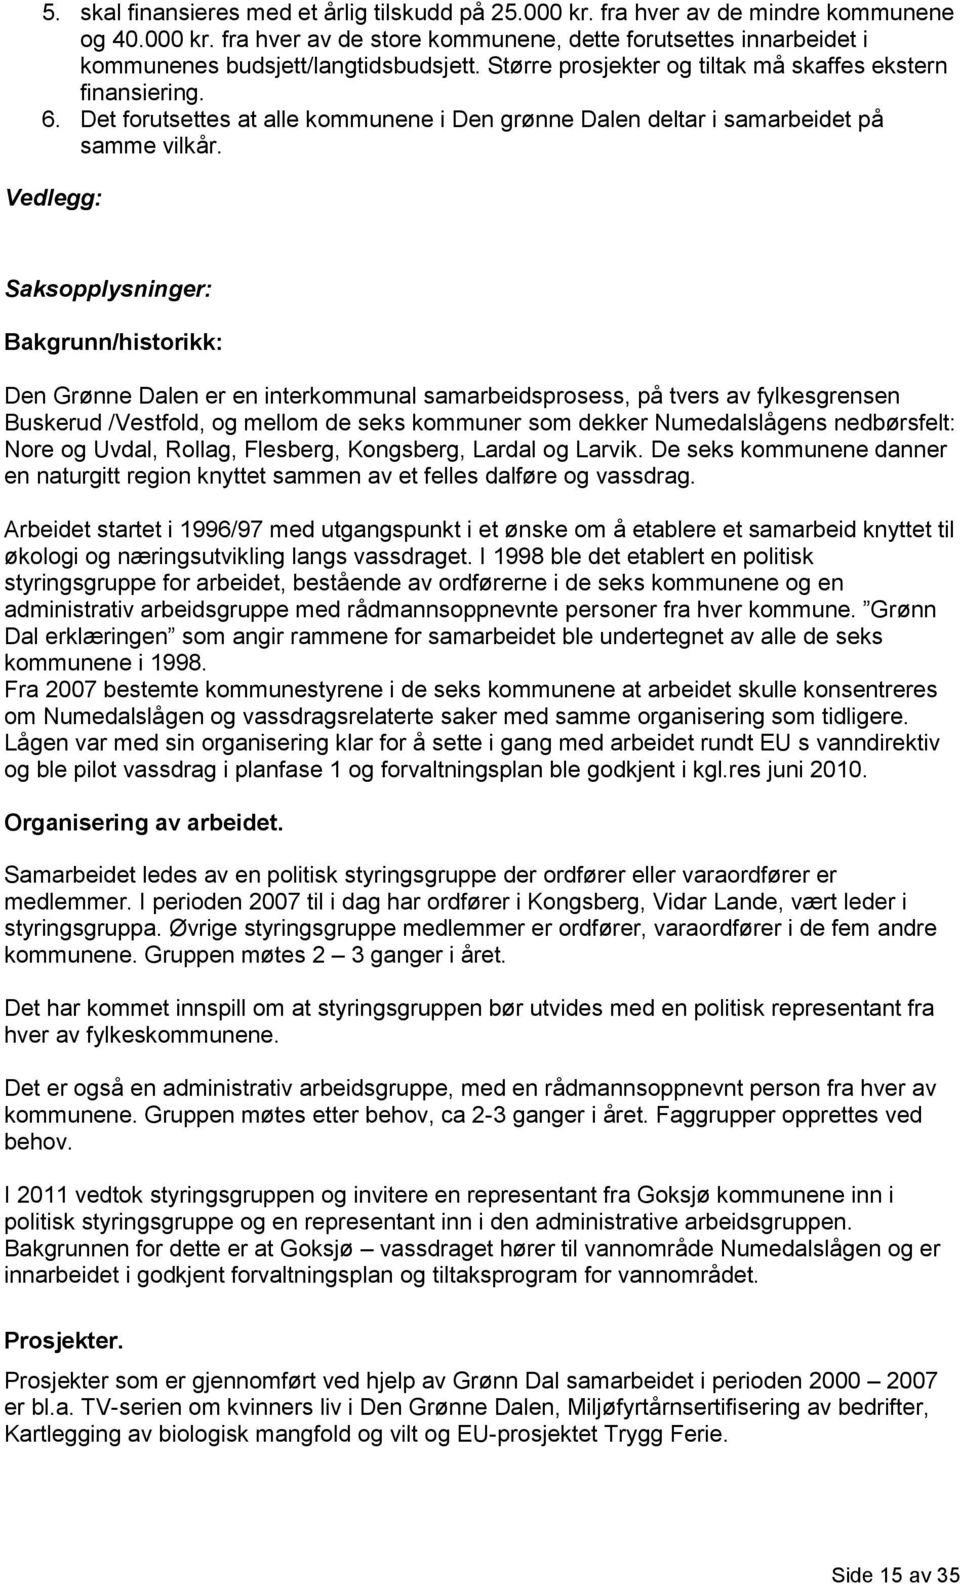 Vedlegg: Saksopplysninger: Bakgrunn/historikk: Den Grønne Dalen er en interkommunal samarbeidsprosess, på tvers av fylkesgrensen Buskerud /Vestfold, og mellom de seks kommuner som dekker